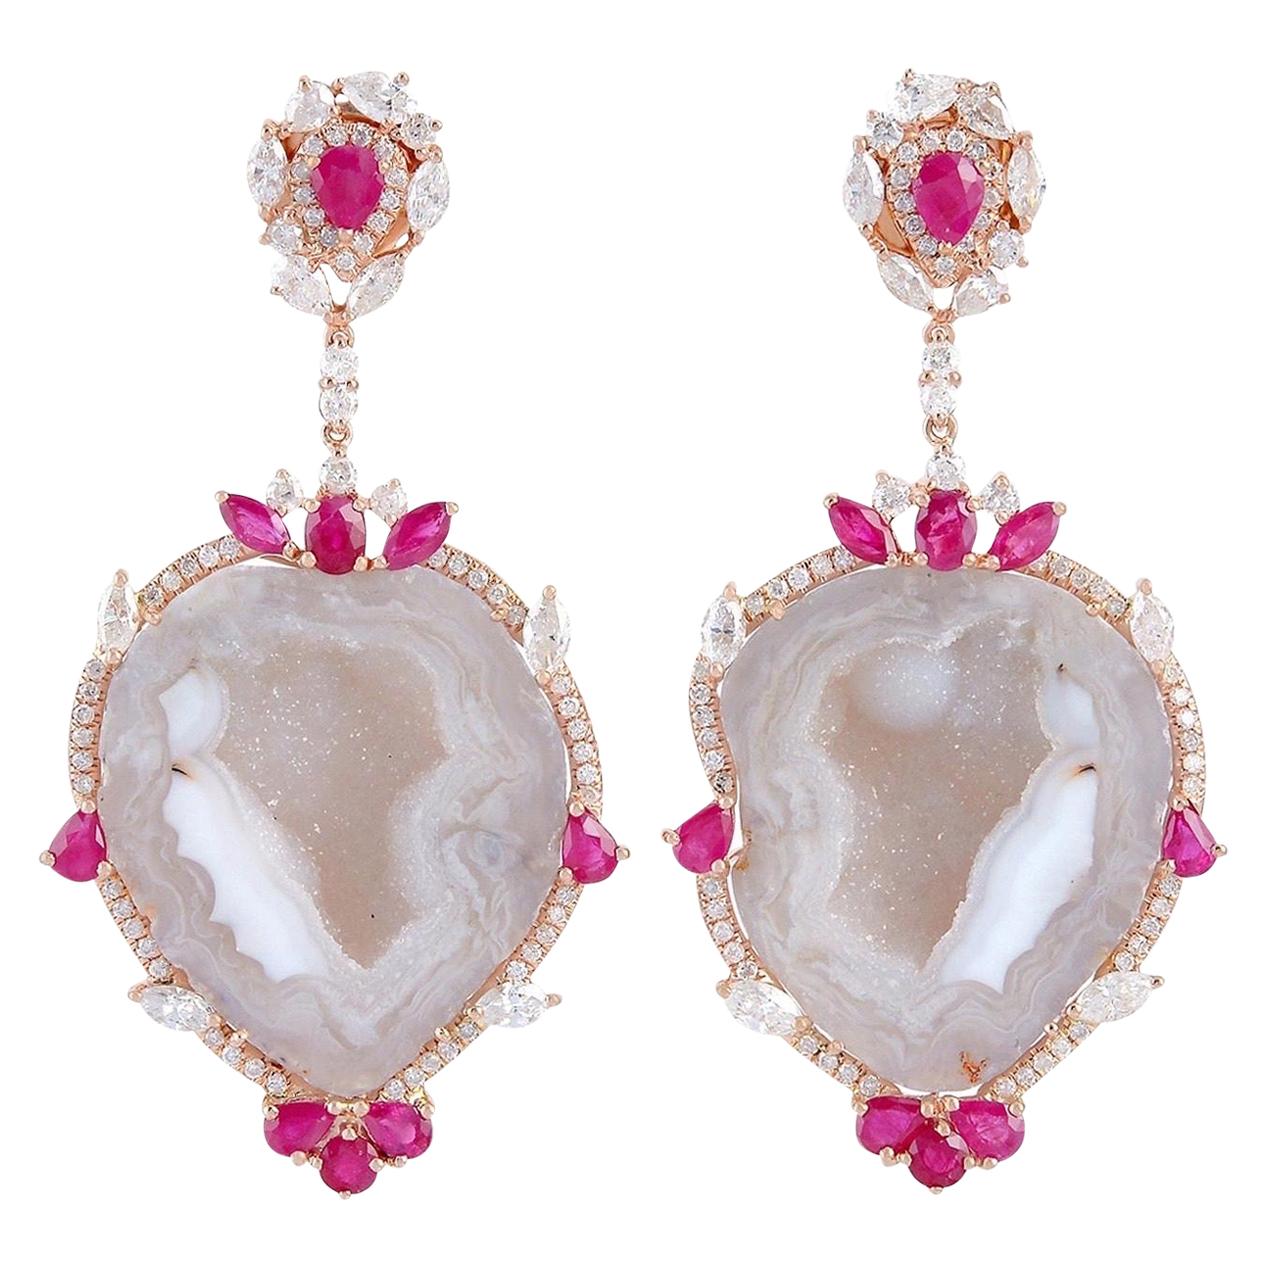 Boucles d'oreilles en or 18 carats avec rubis et diamants de couleur géode